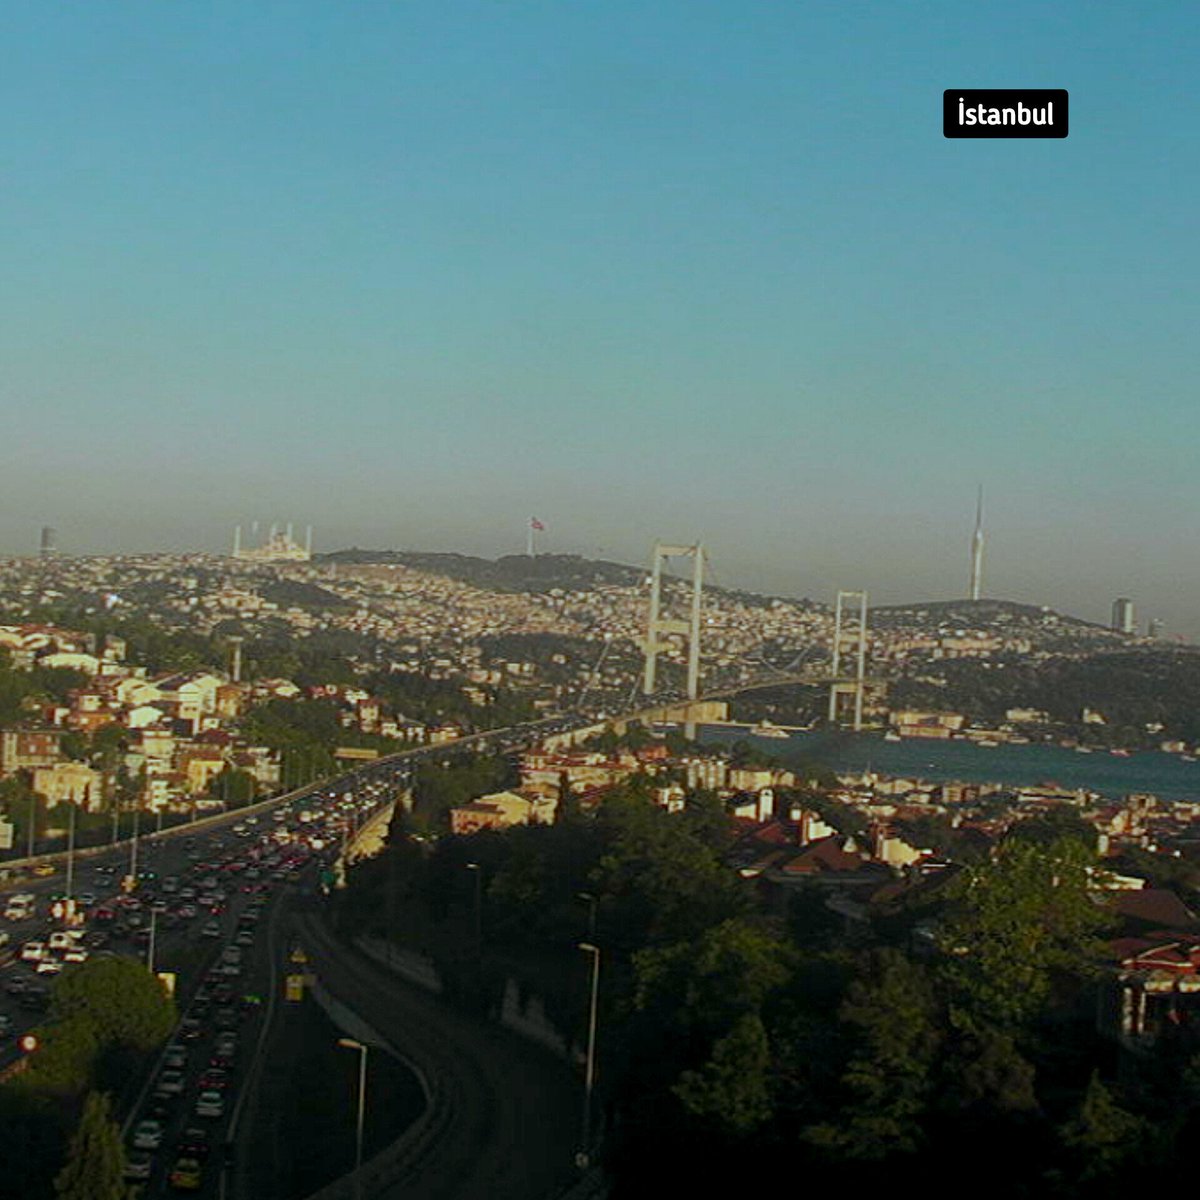 Afrika tozları İstanbul'dan tamamen çekildi. Hava 'fresh' moda geçti.